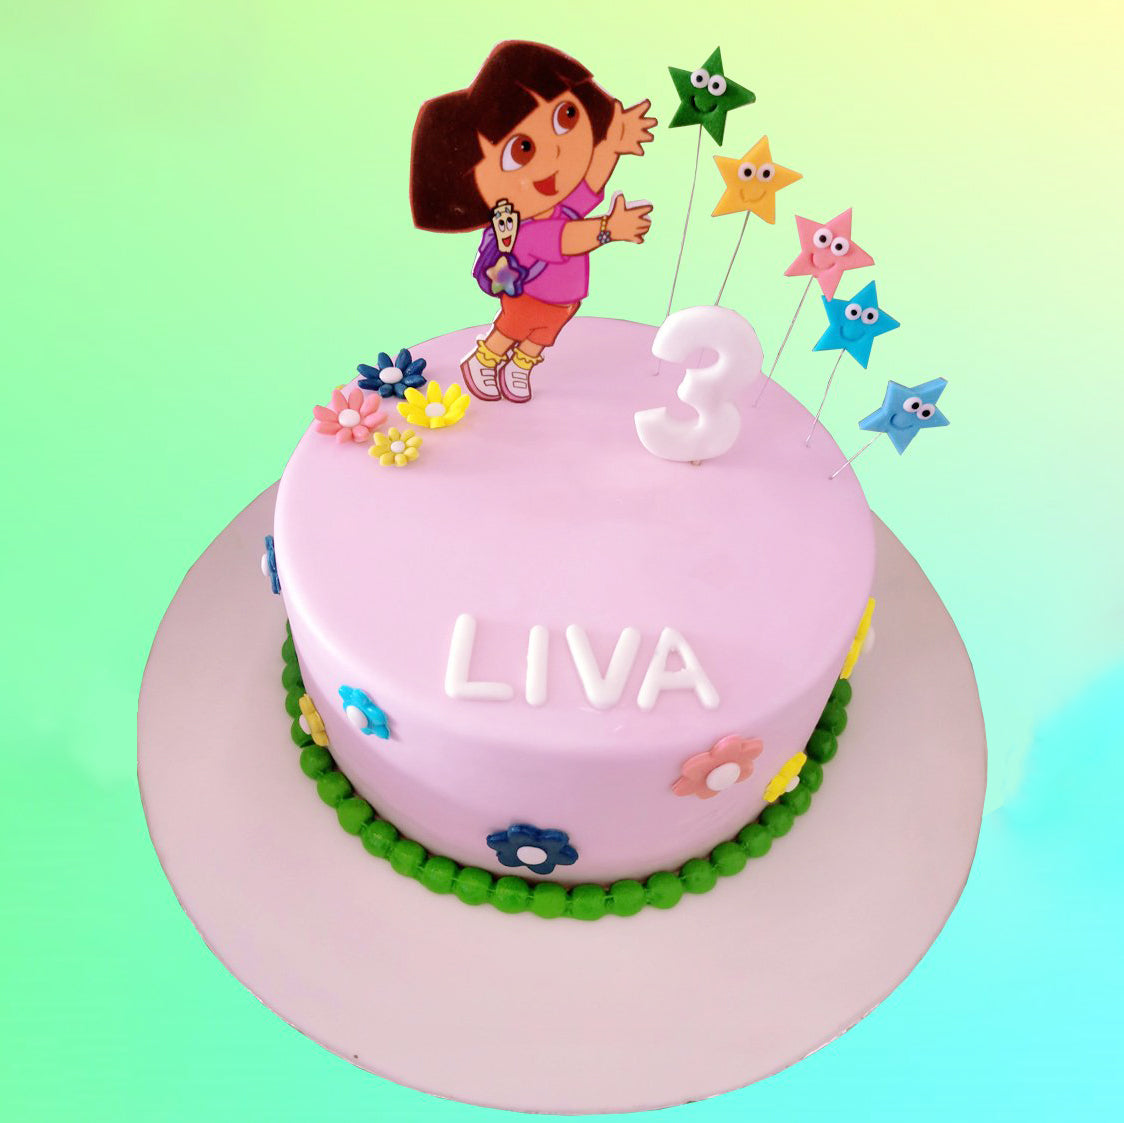 Dora Cartoon Cake in Pune | Just Cakes